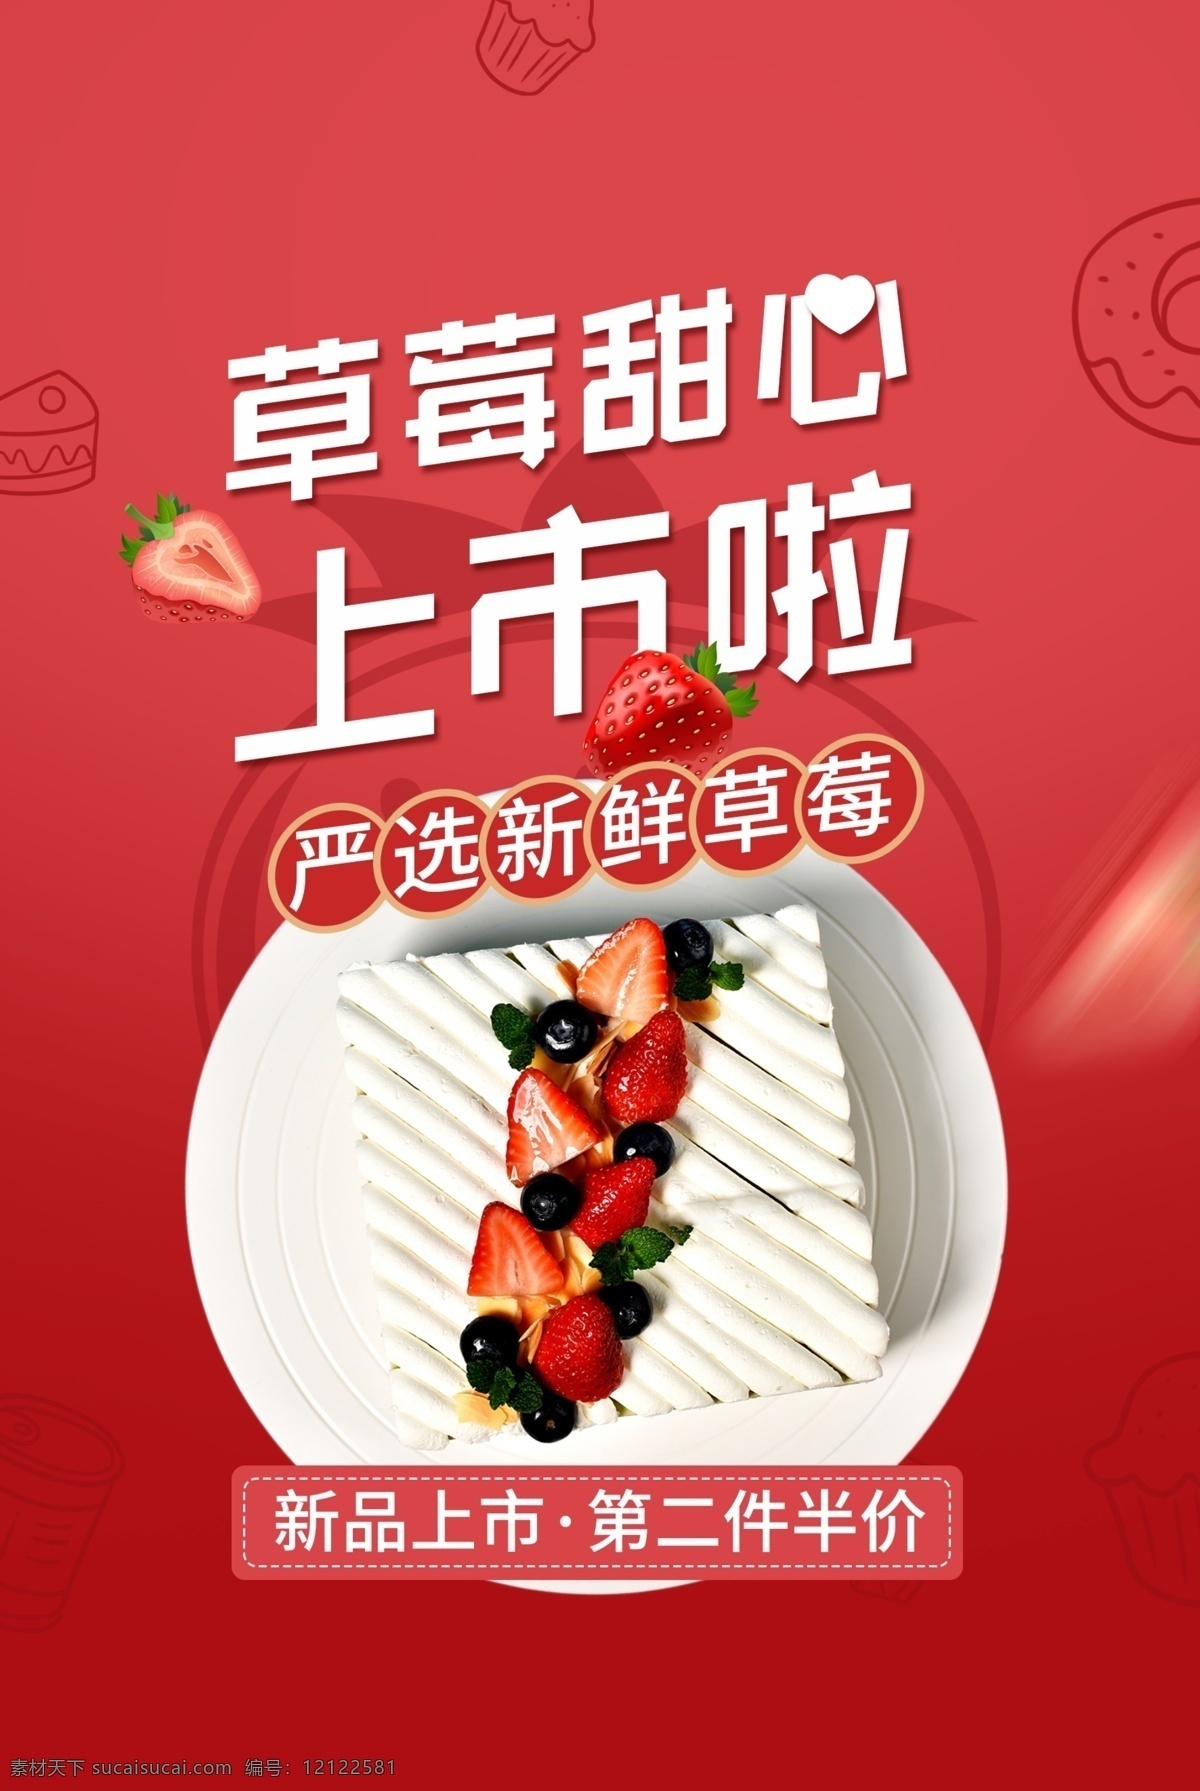 草莓 蛋糕 美食 活动 宣传海报 素材图片 宣传 海报 餐饮美食 类